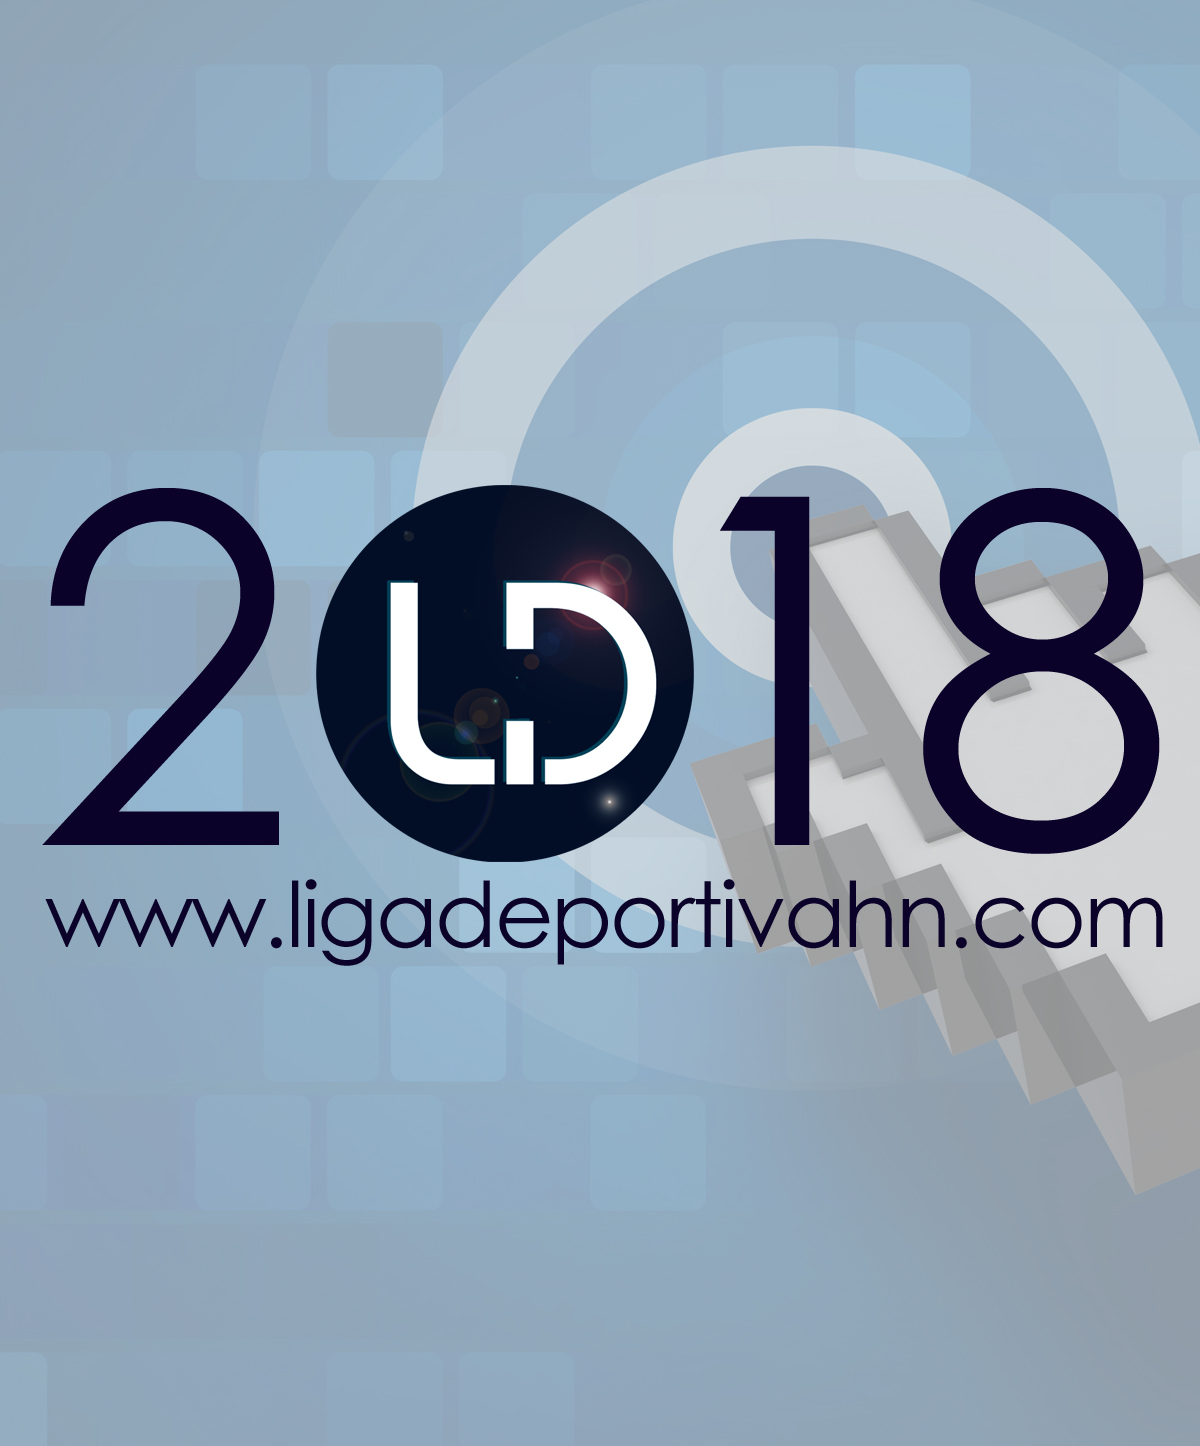 www.ligadeportivahn.com 